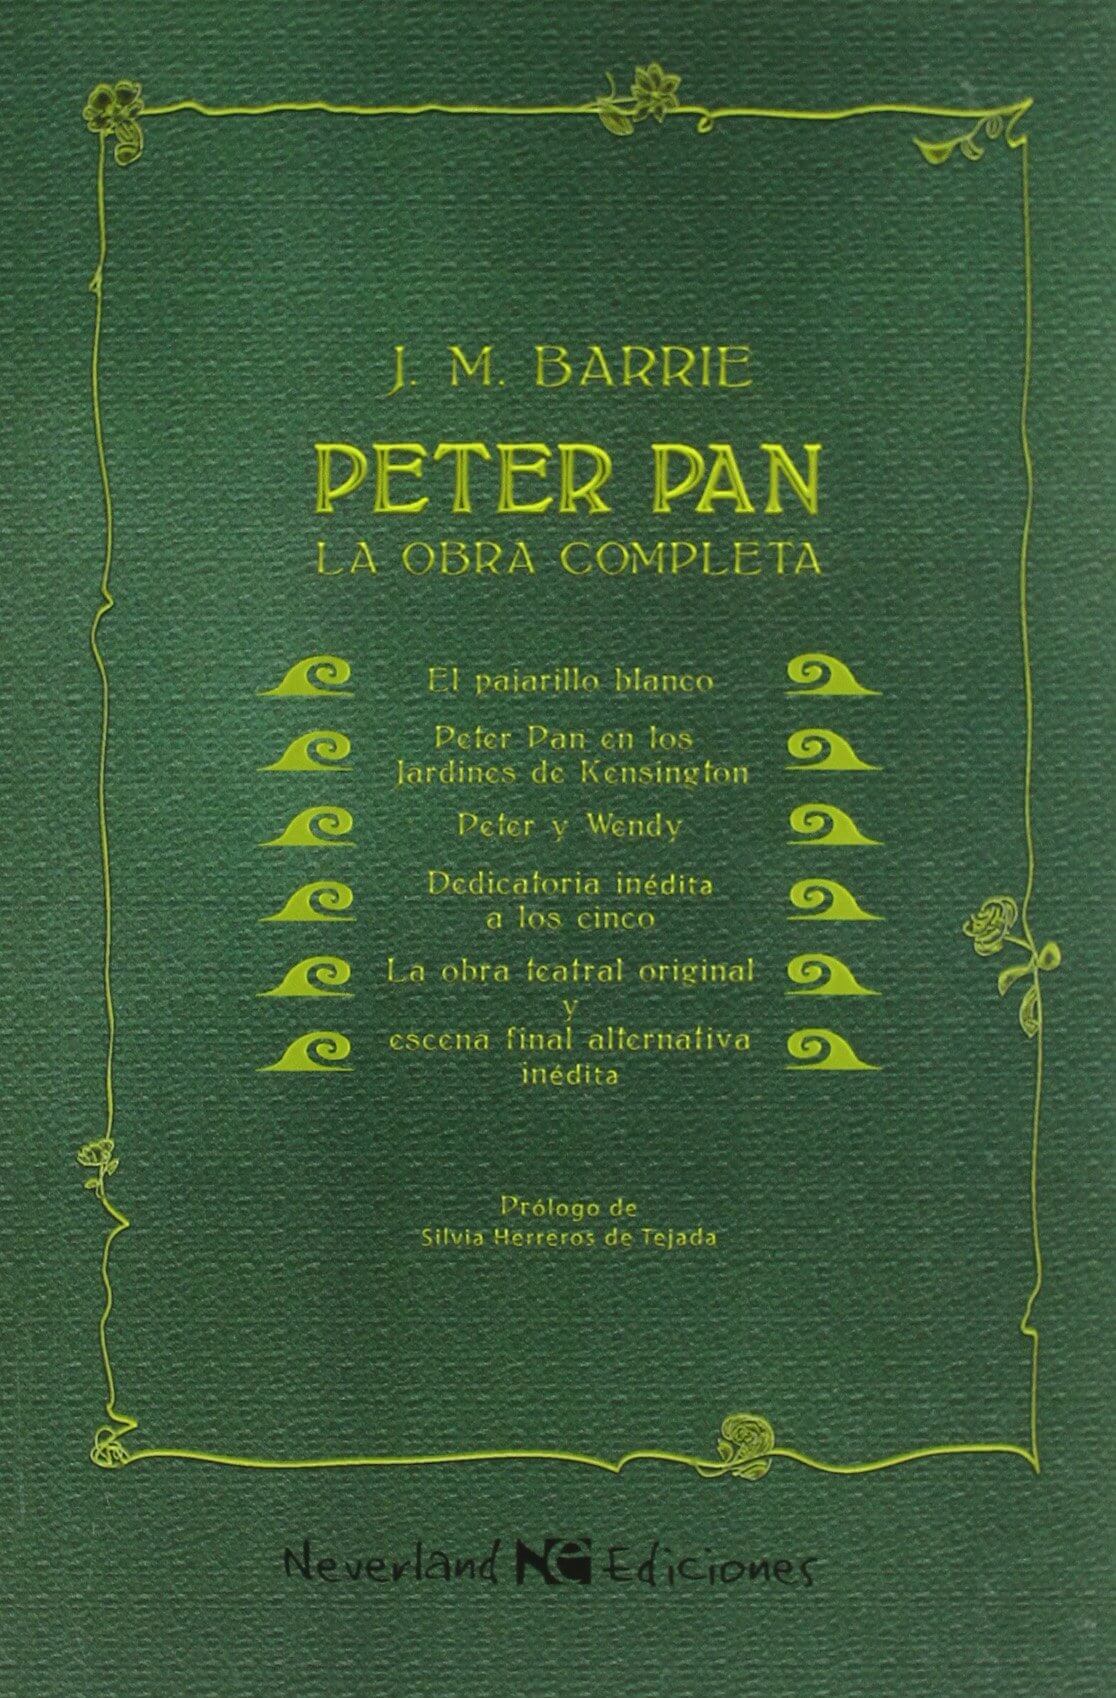 Peter Pan (La obra completa) – Neverland Ediciones